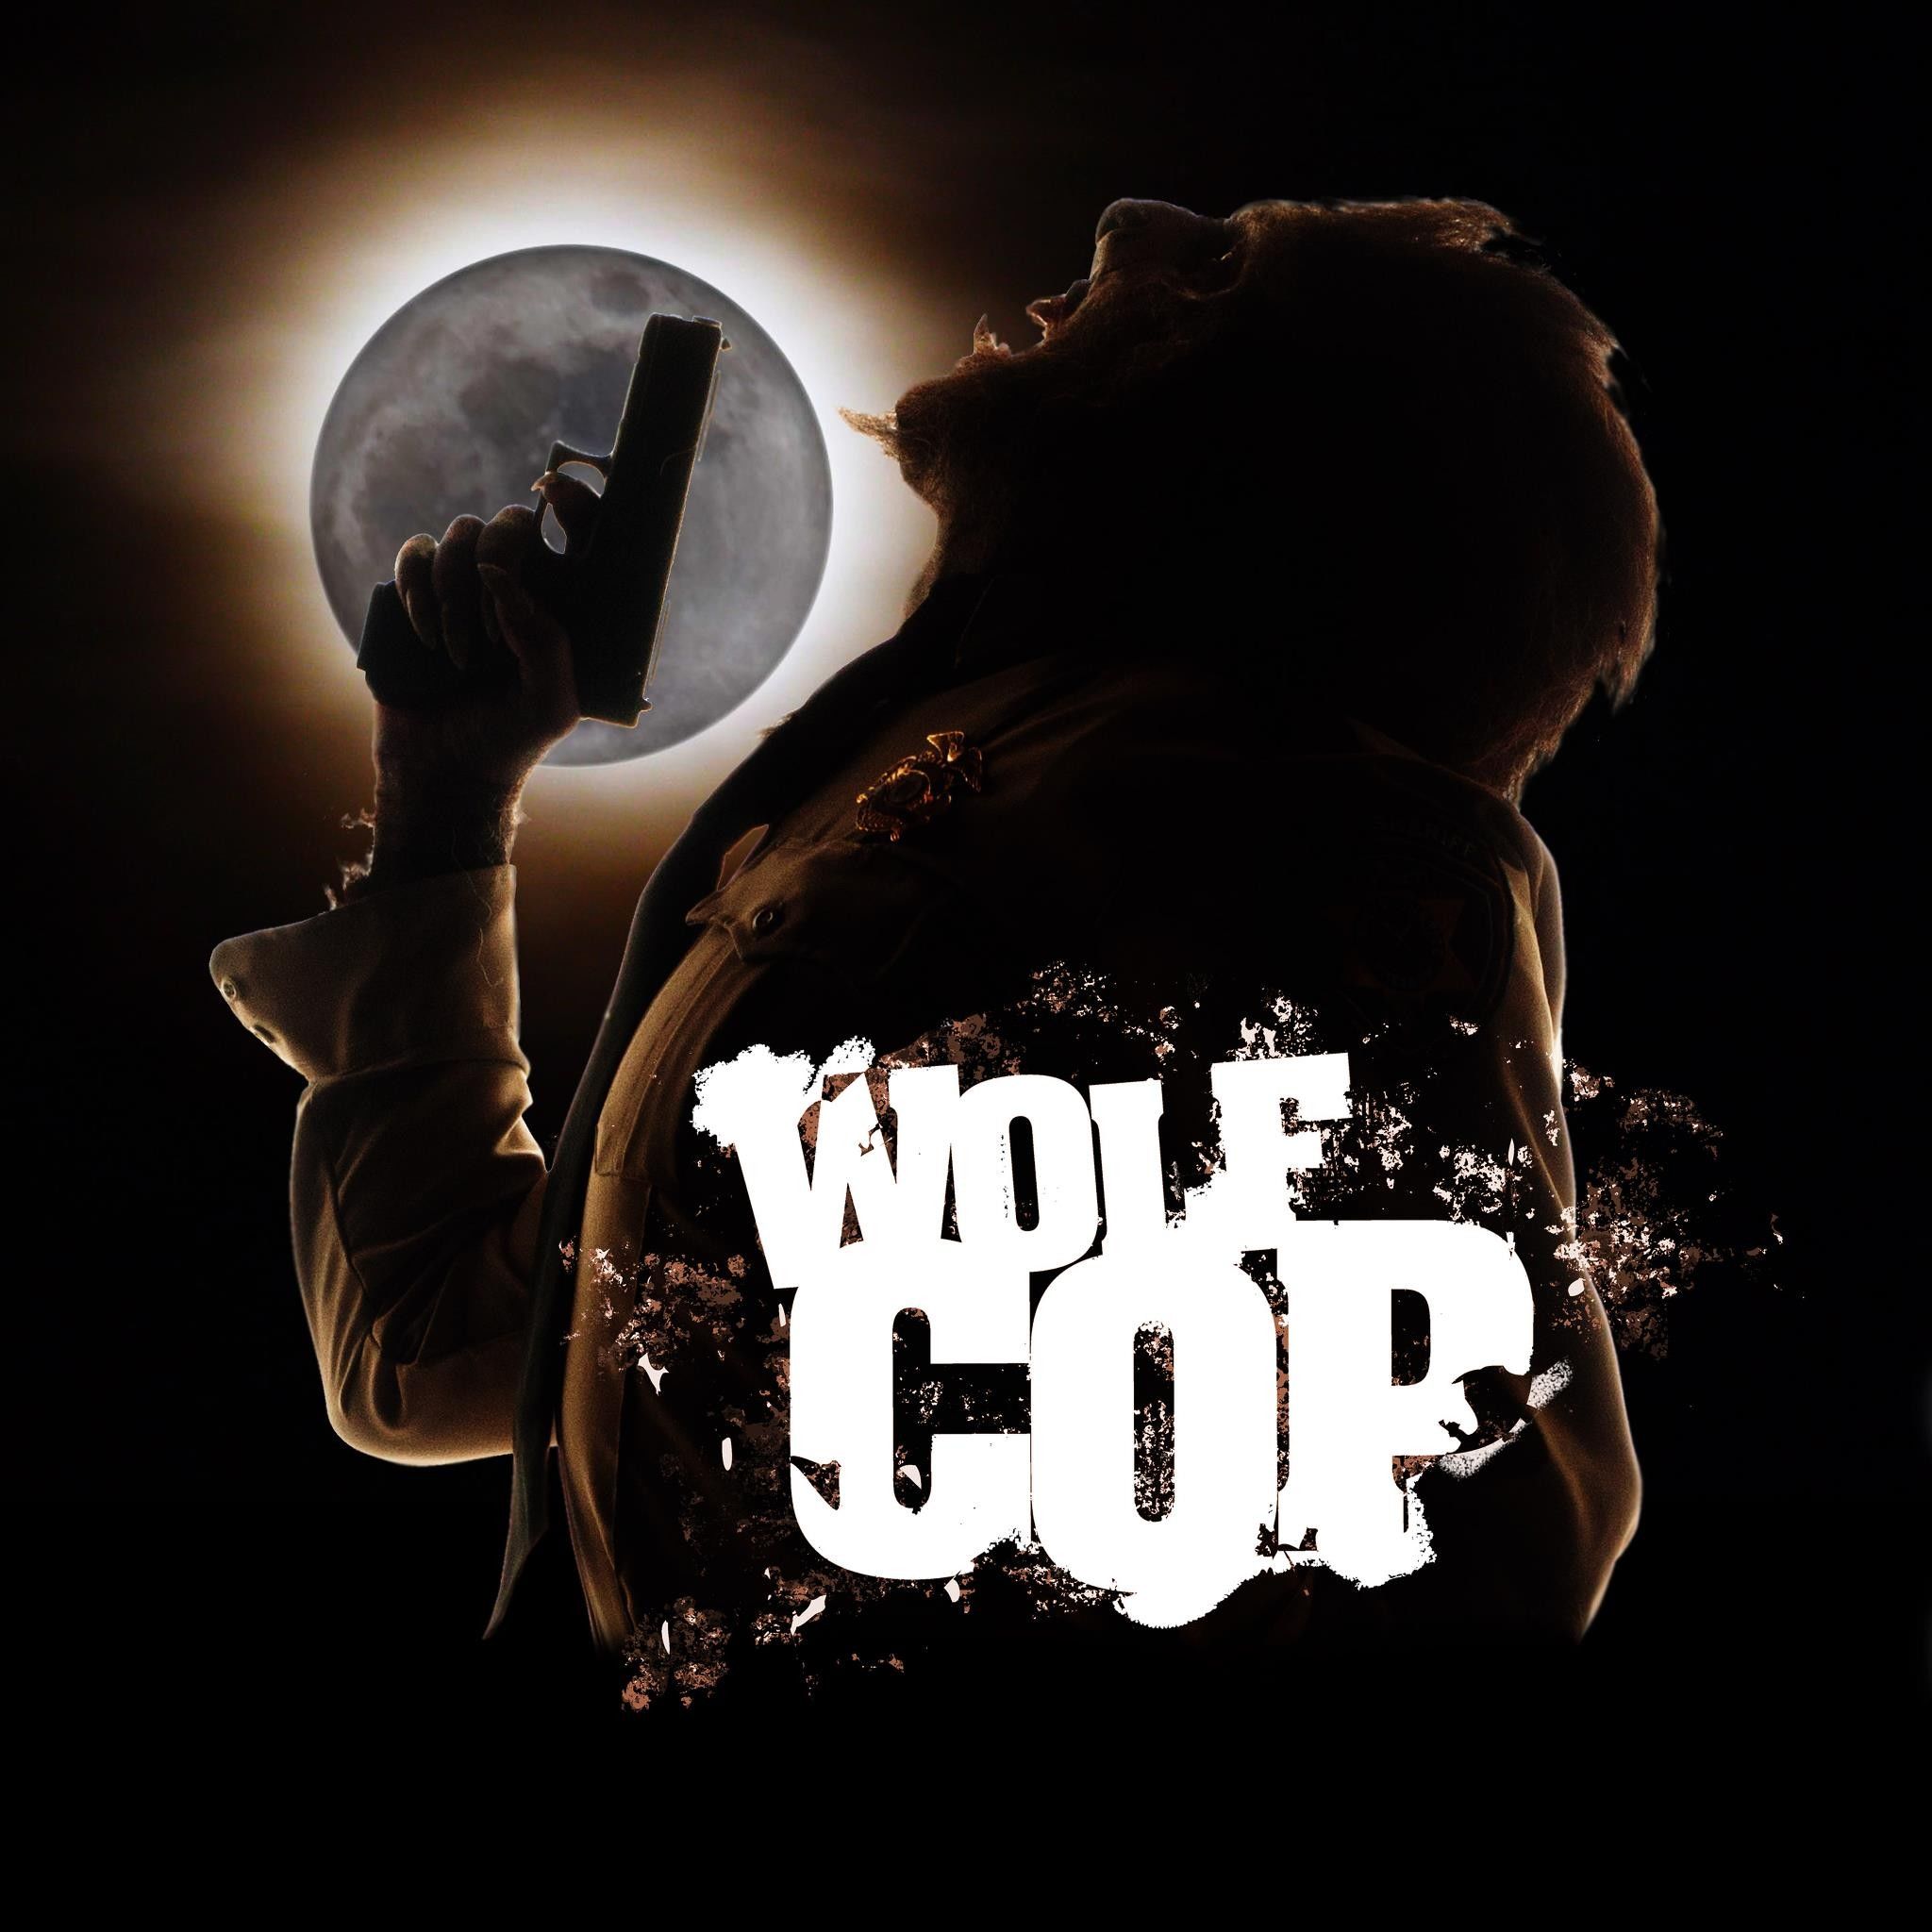 Волк-полицейский